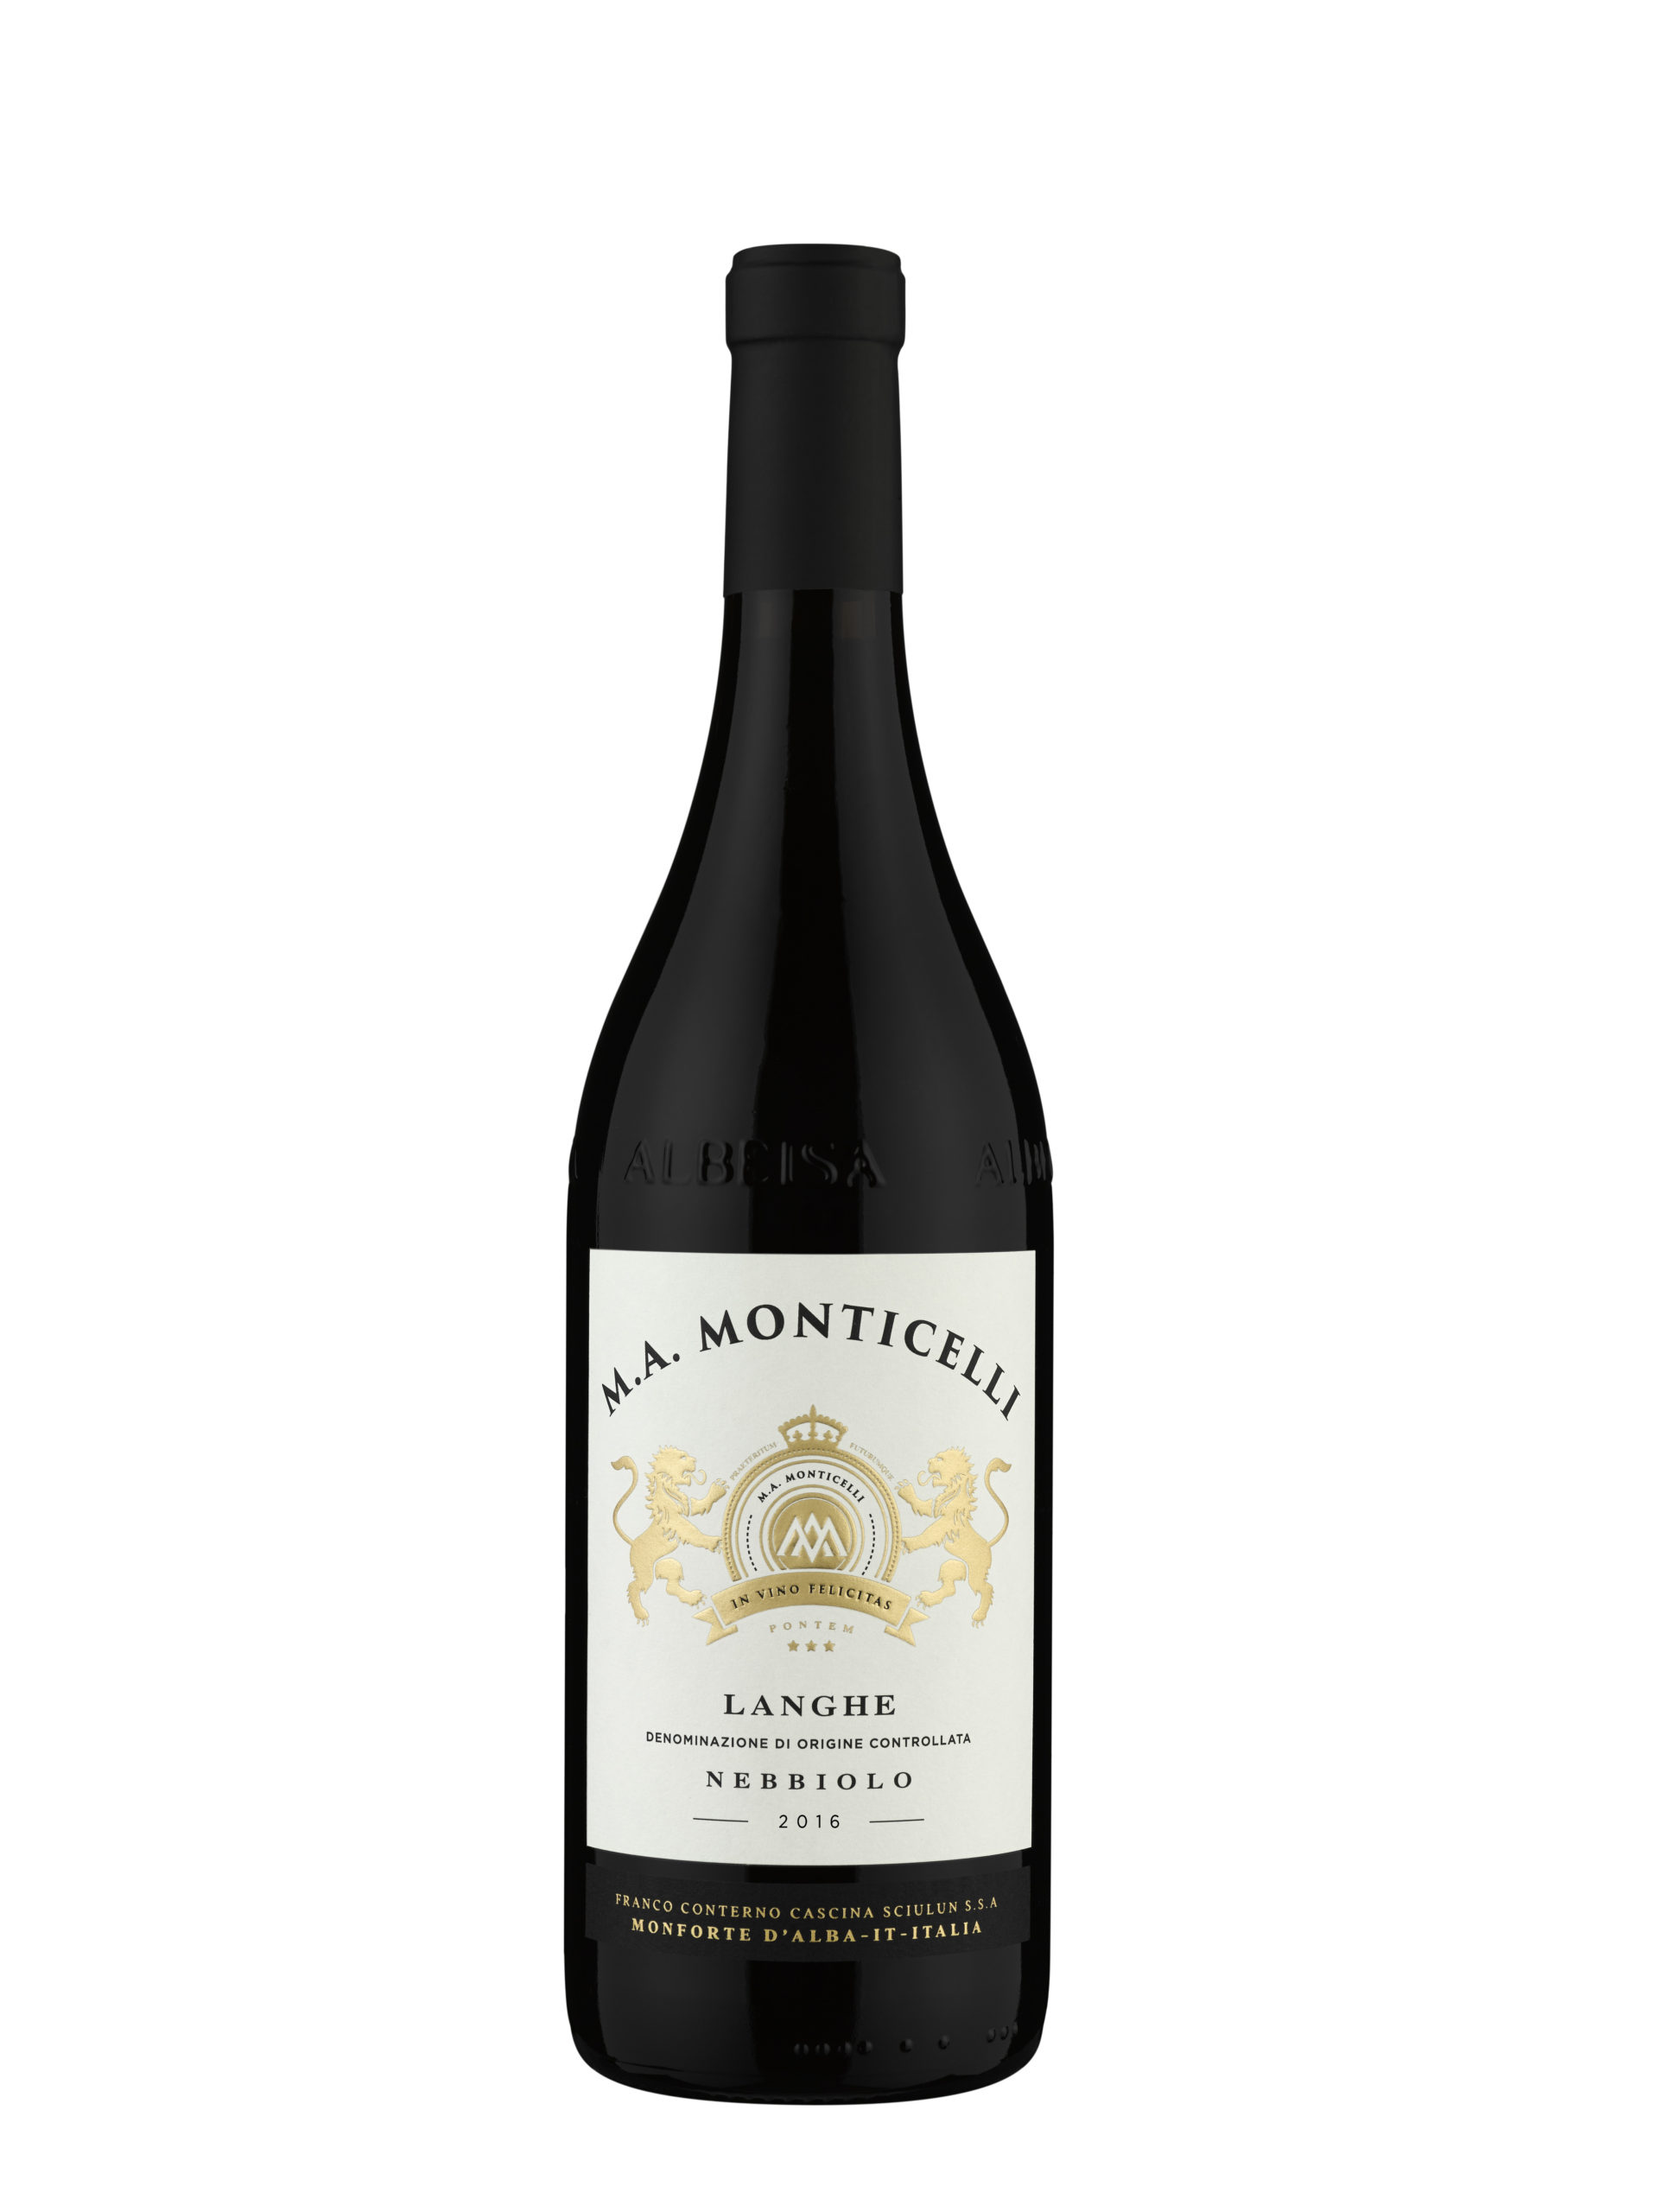 2016 M. A. Monticelli Barolo Langhe – Artisans & Vines